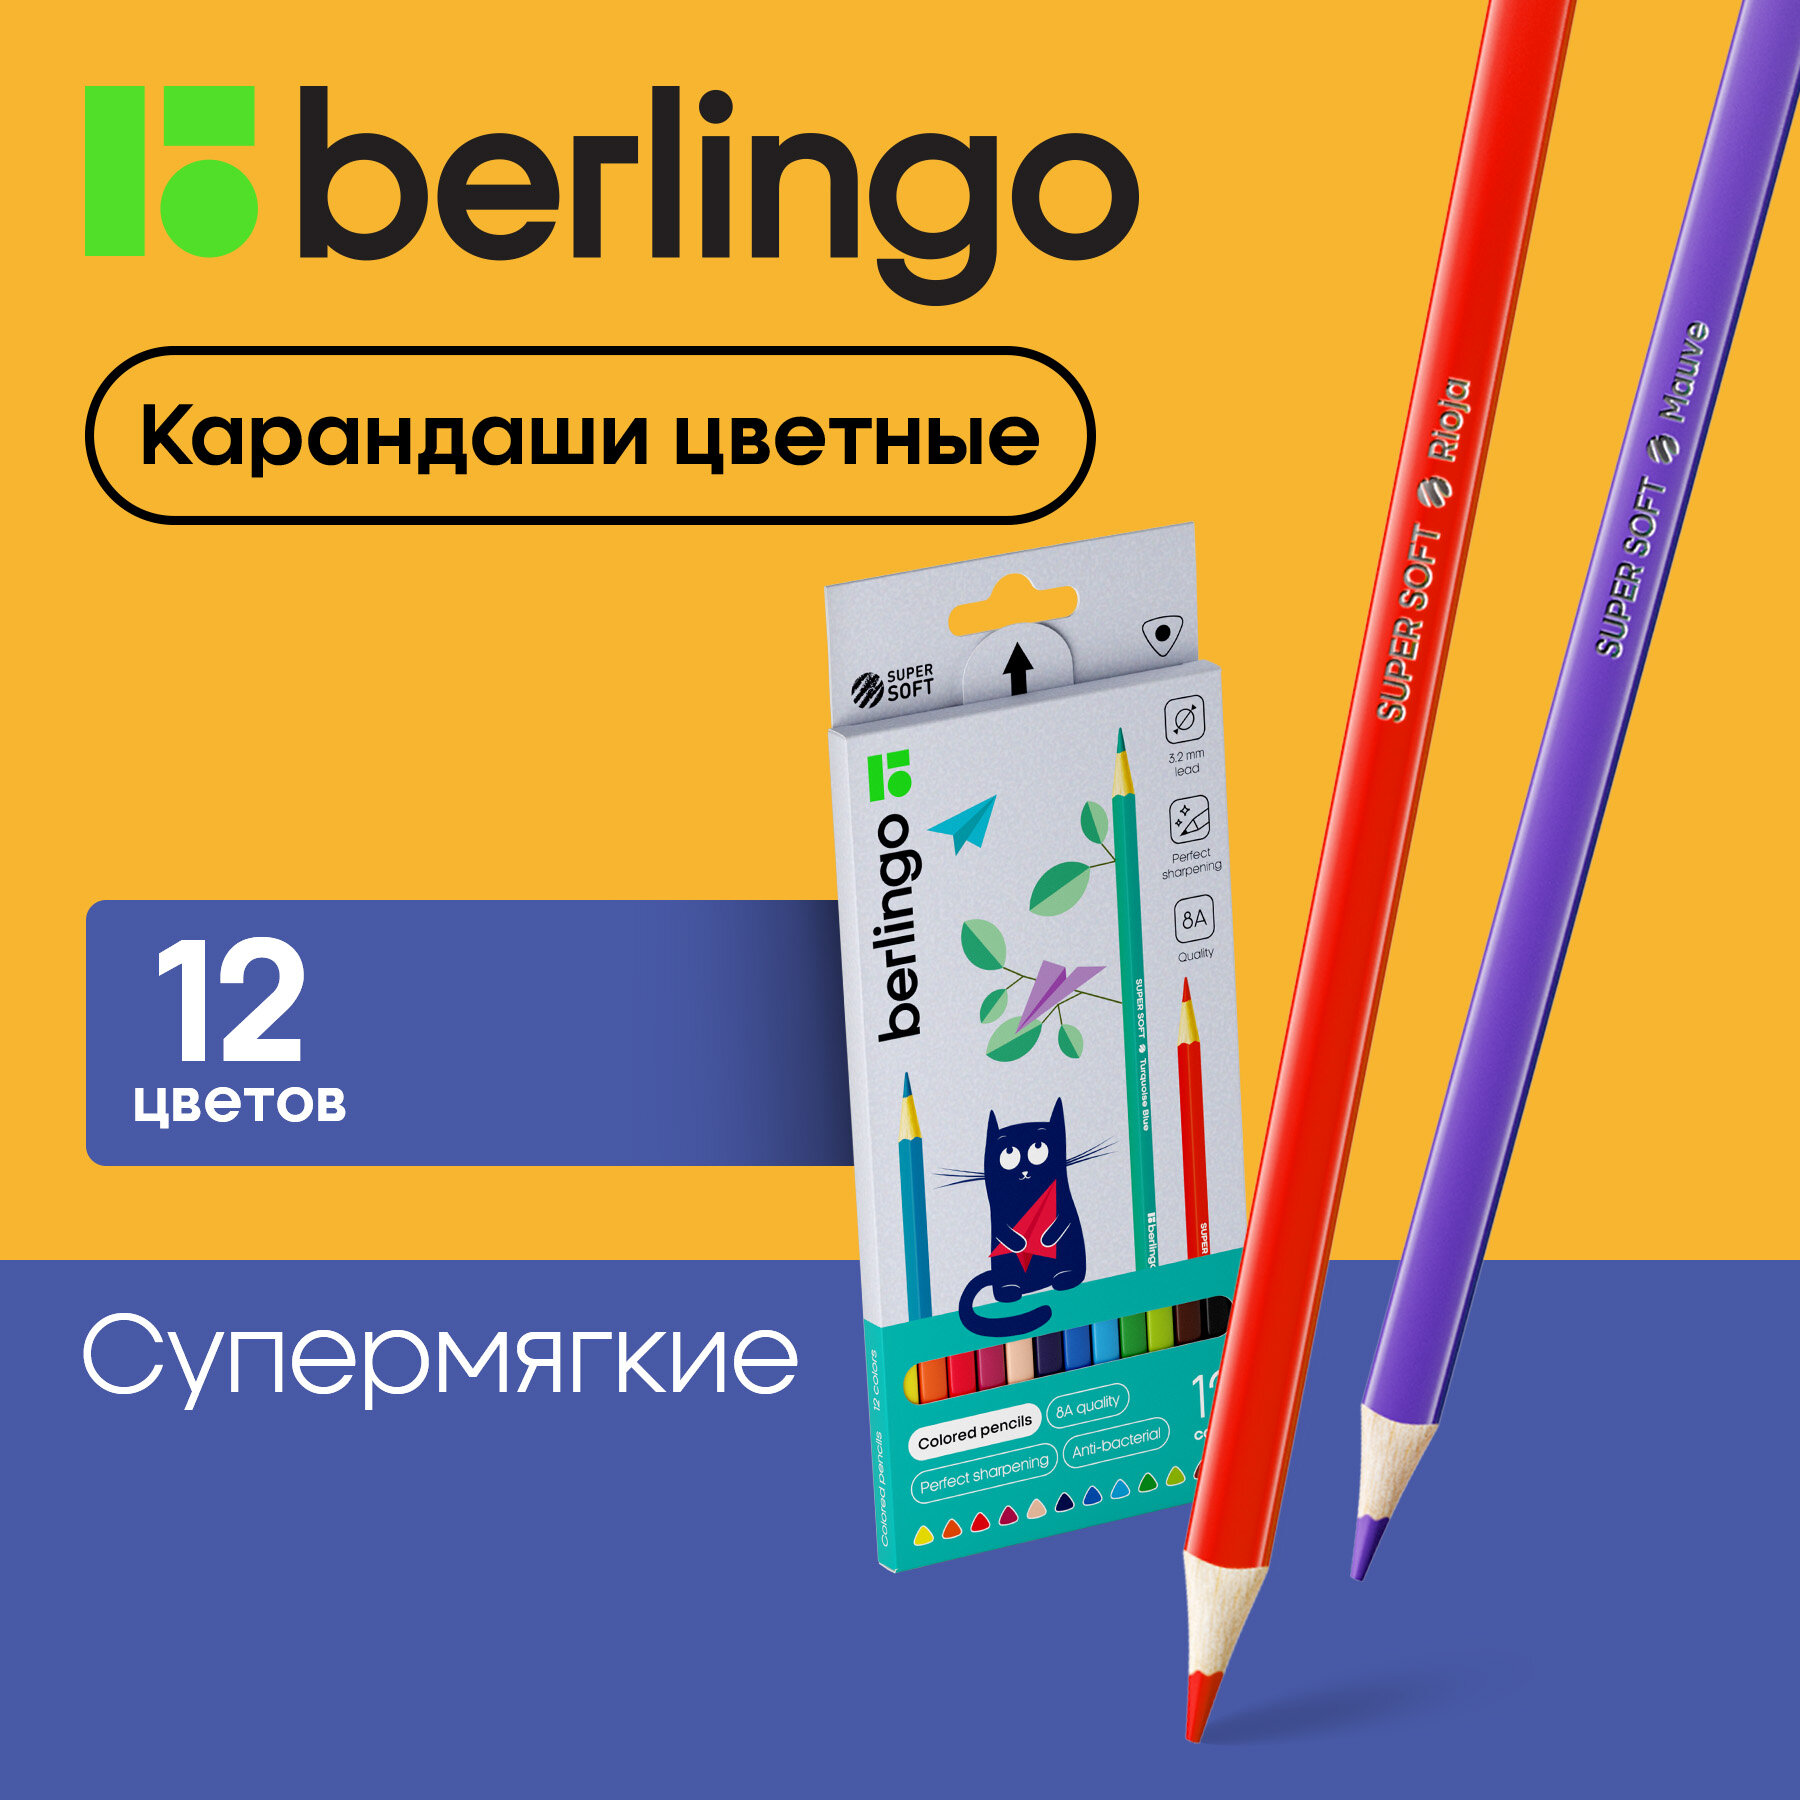 Цветные карандаши для школы 12 цветов, трехгранные / Набор цветных карандашей для рисования школьный Berlingo "SuperSoft. Жил-был кот"